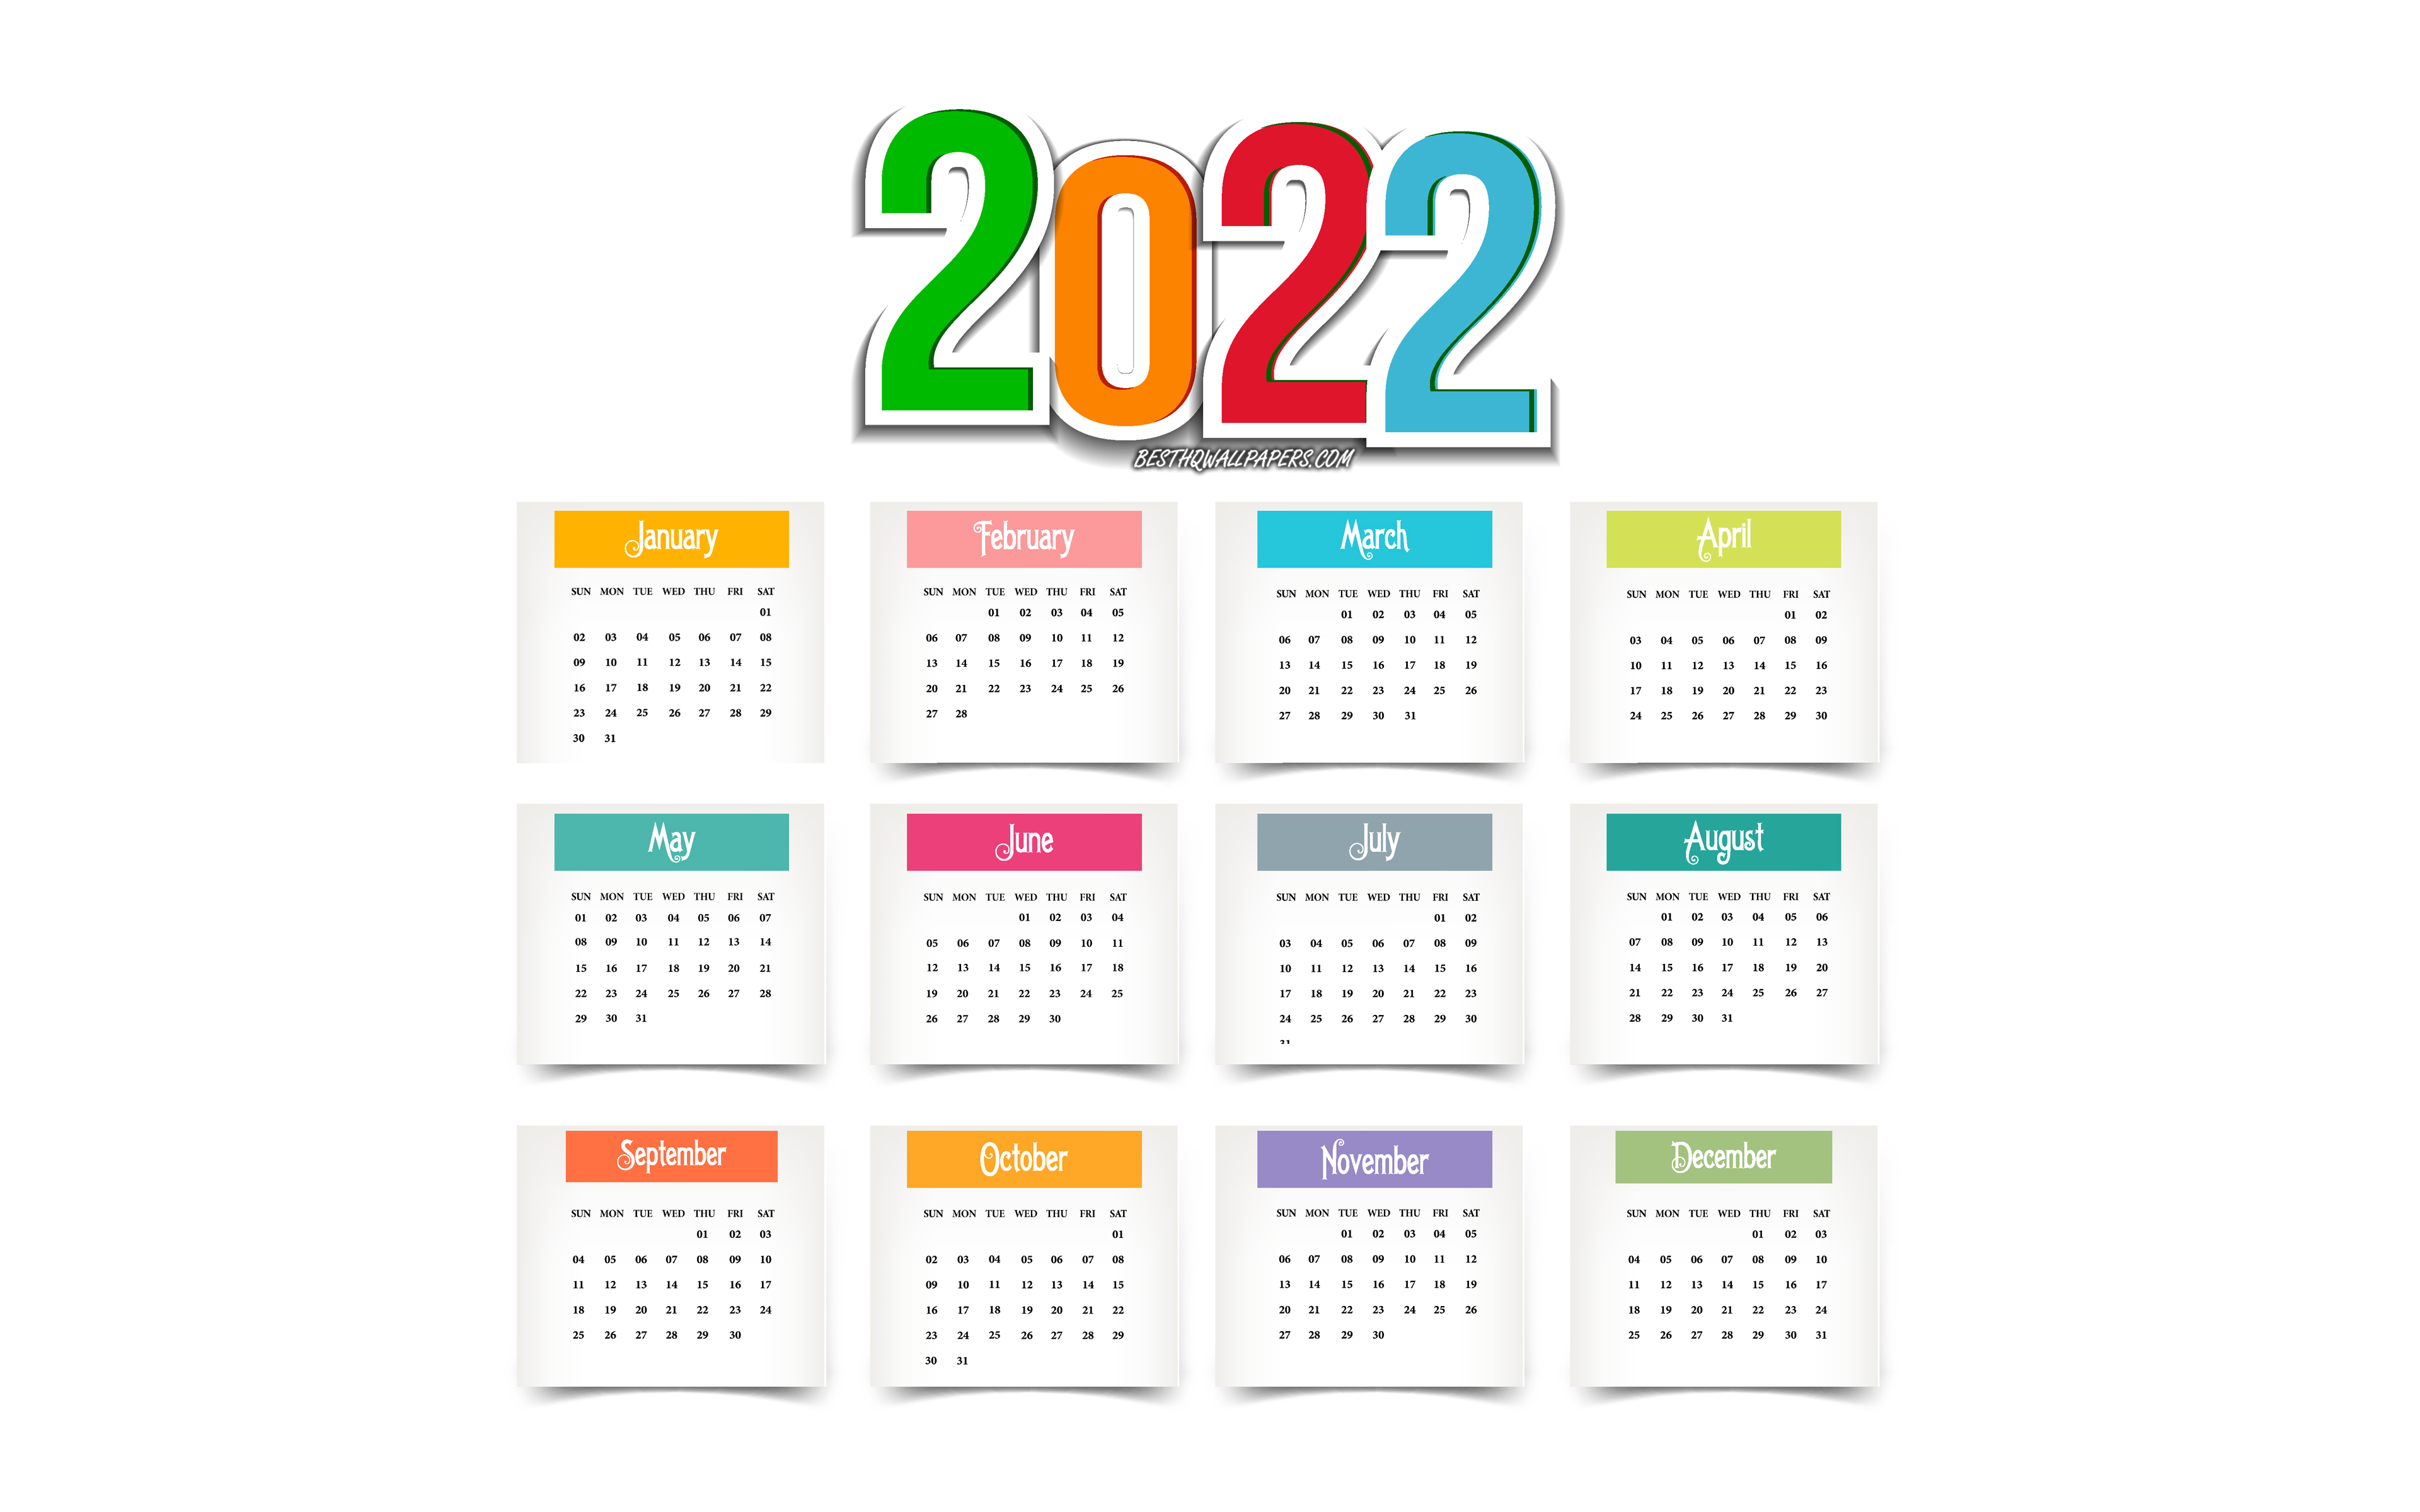 December 2022 Wallpaper Calendar Calendar 2022 Computer Wallpapers - Wallpaper Cave